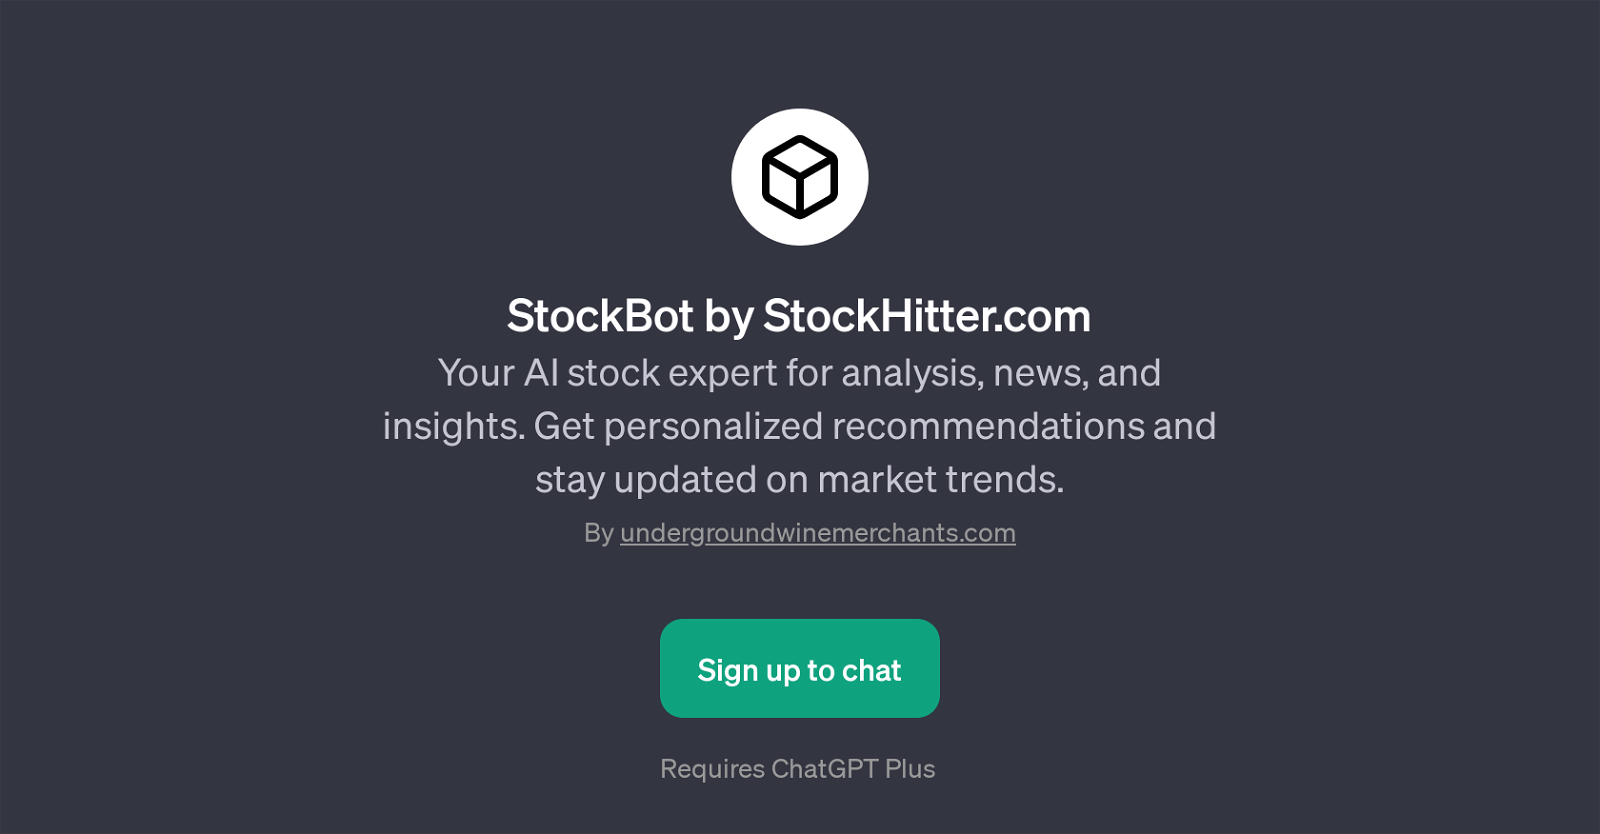 StockBot by StockHitter.com website